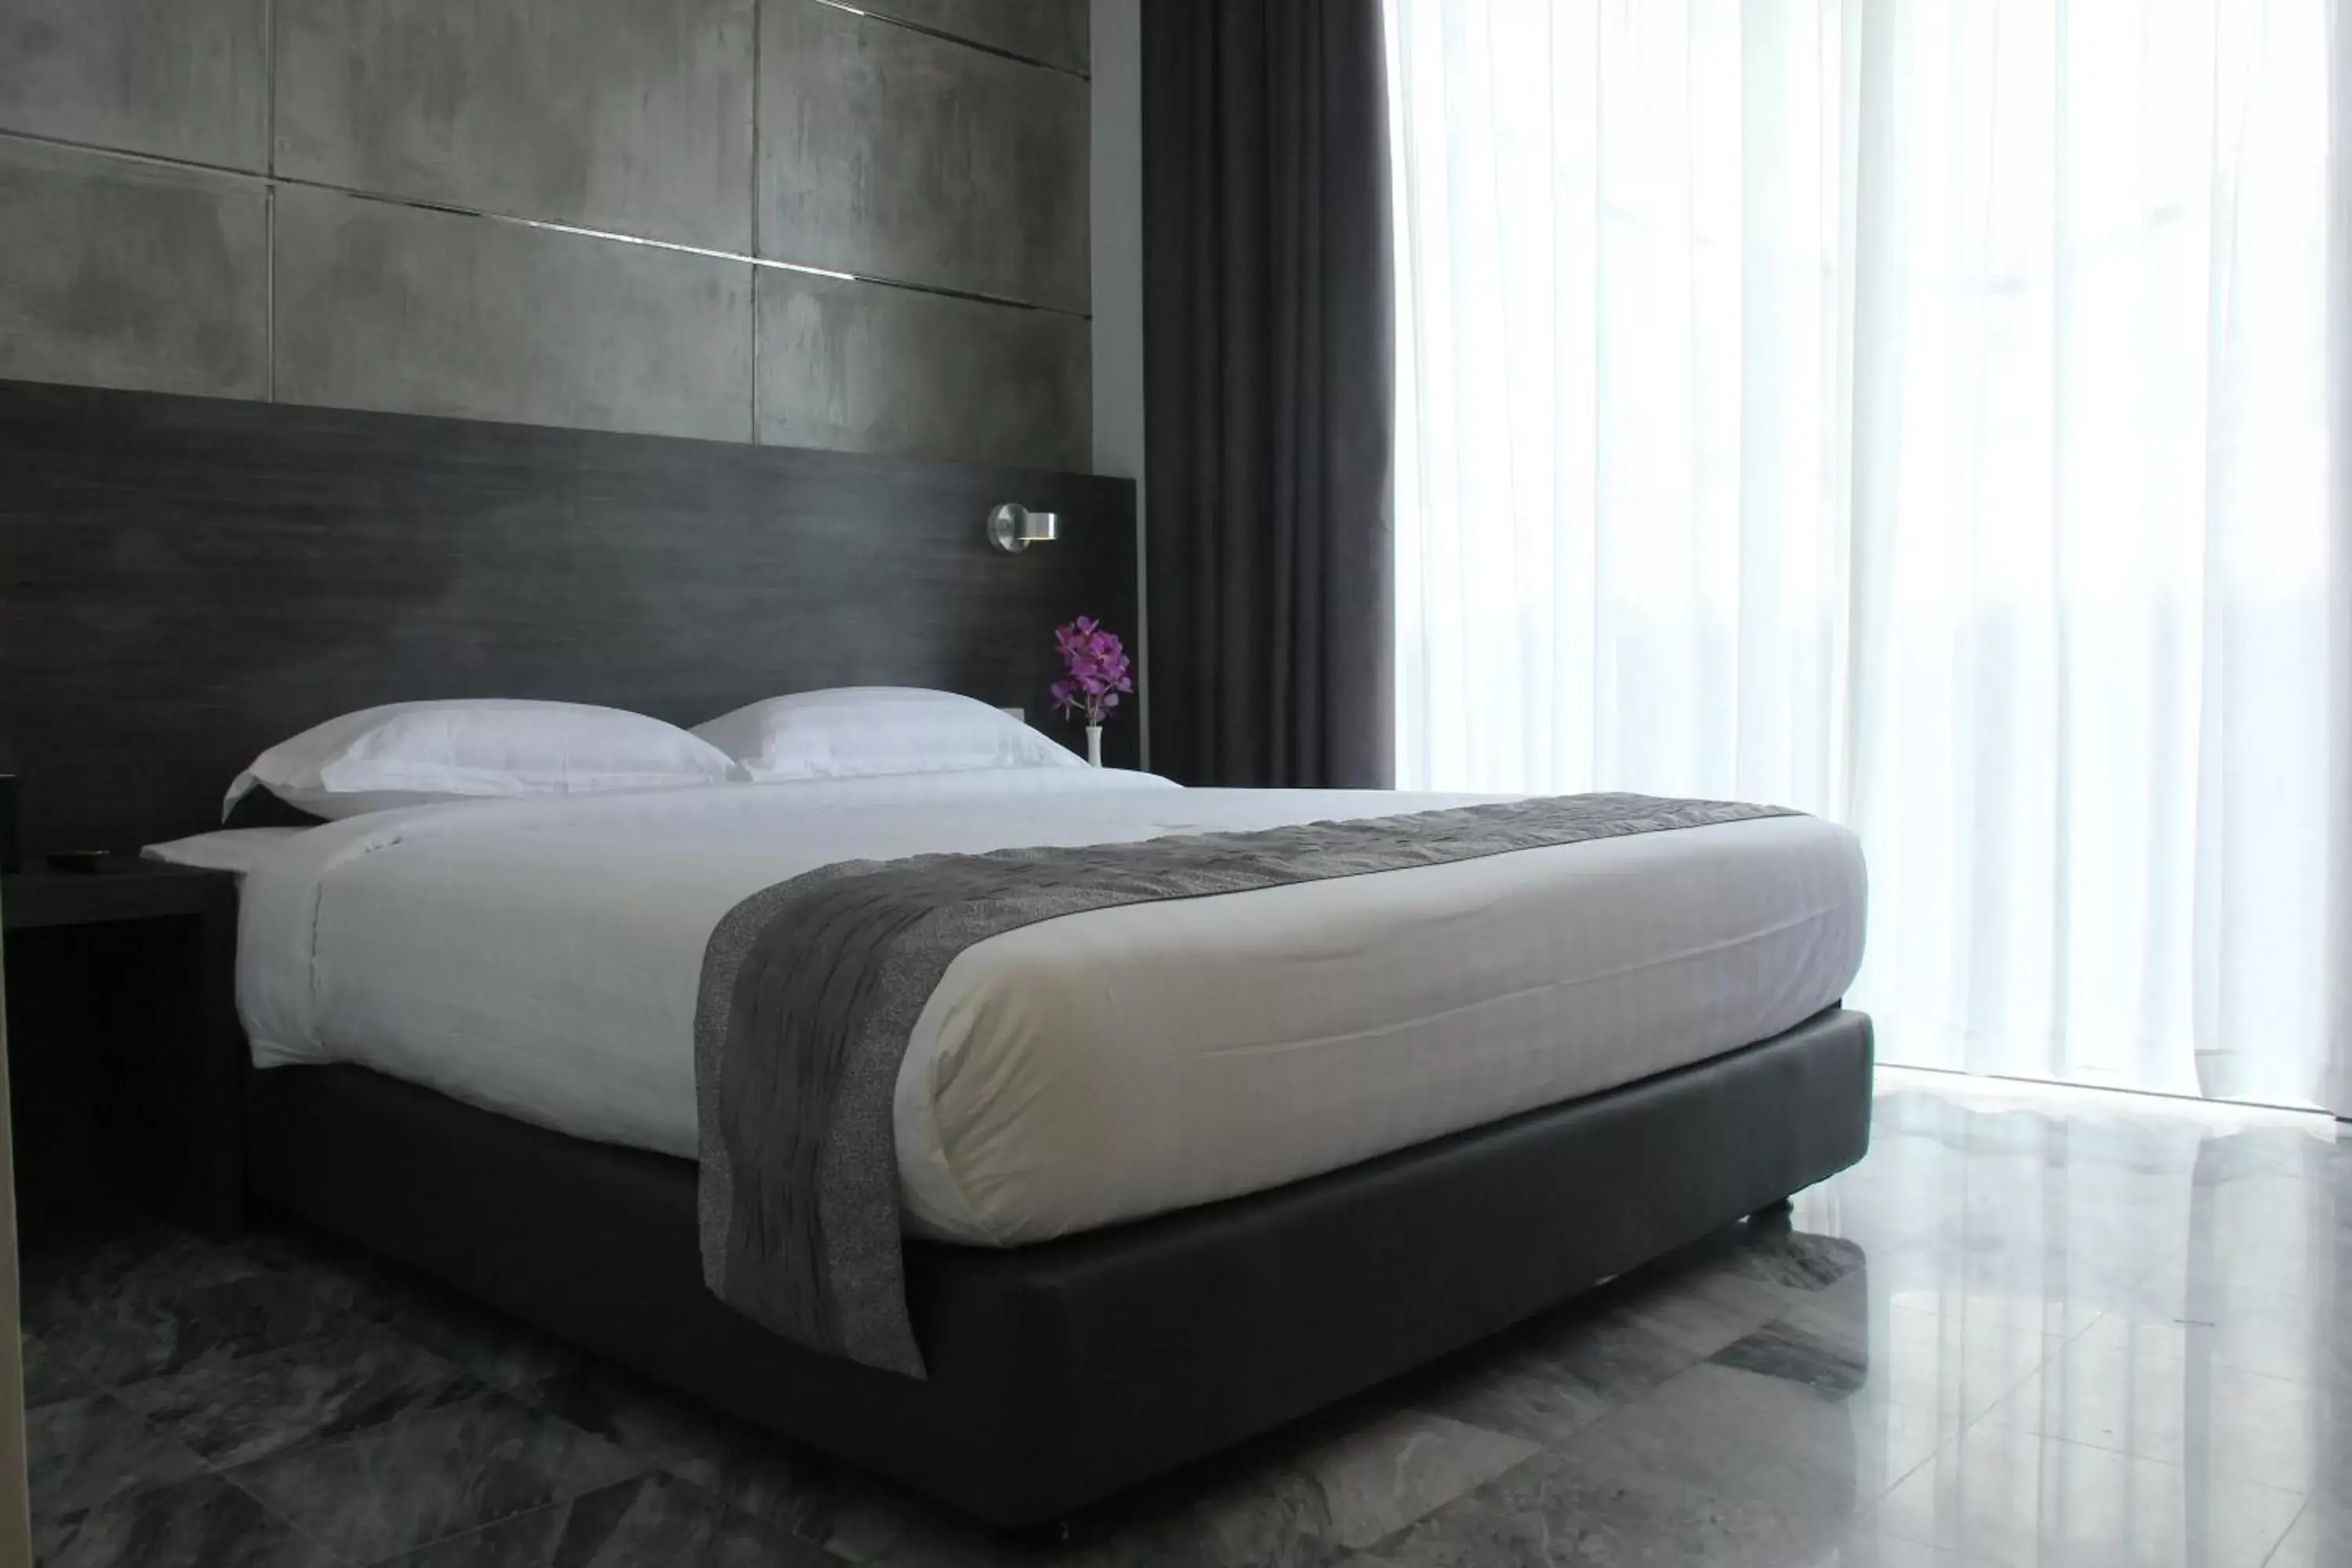 Bed in Dreamtel Jakarta